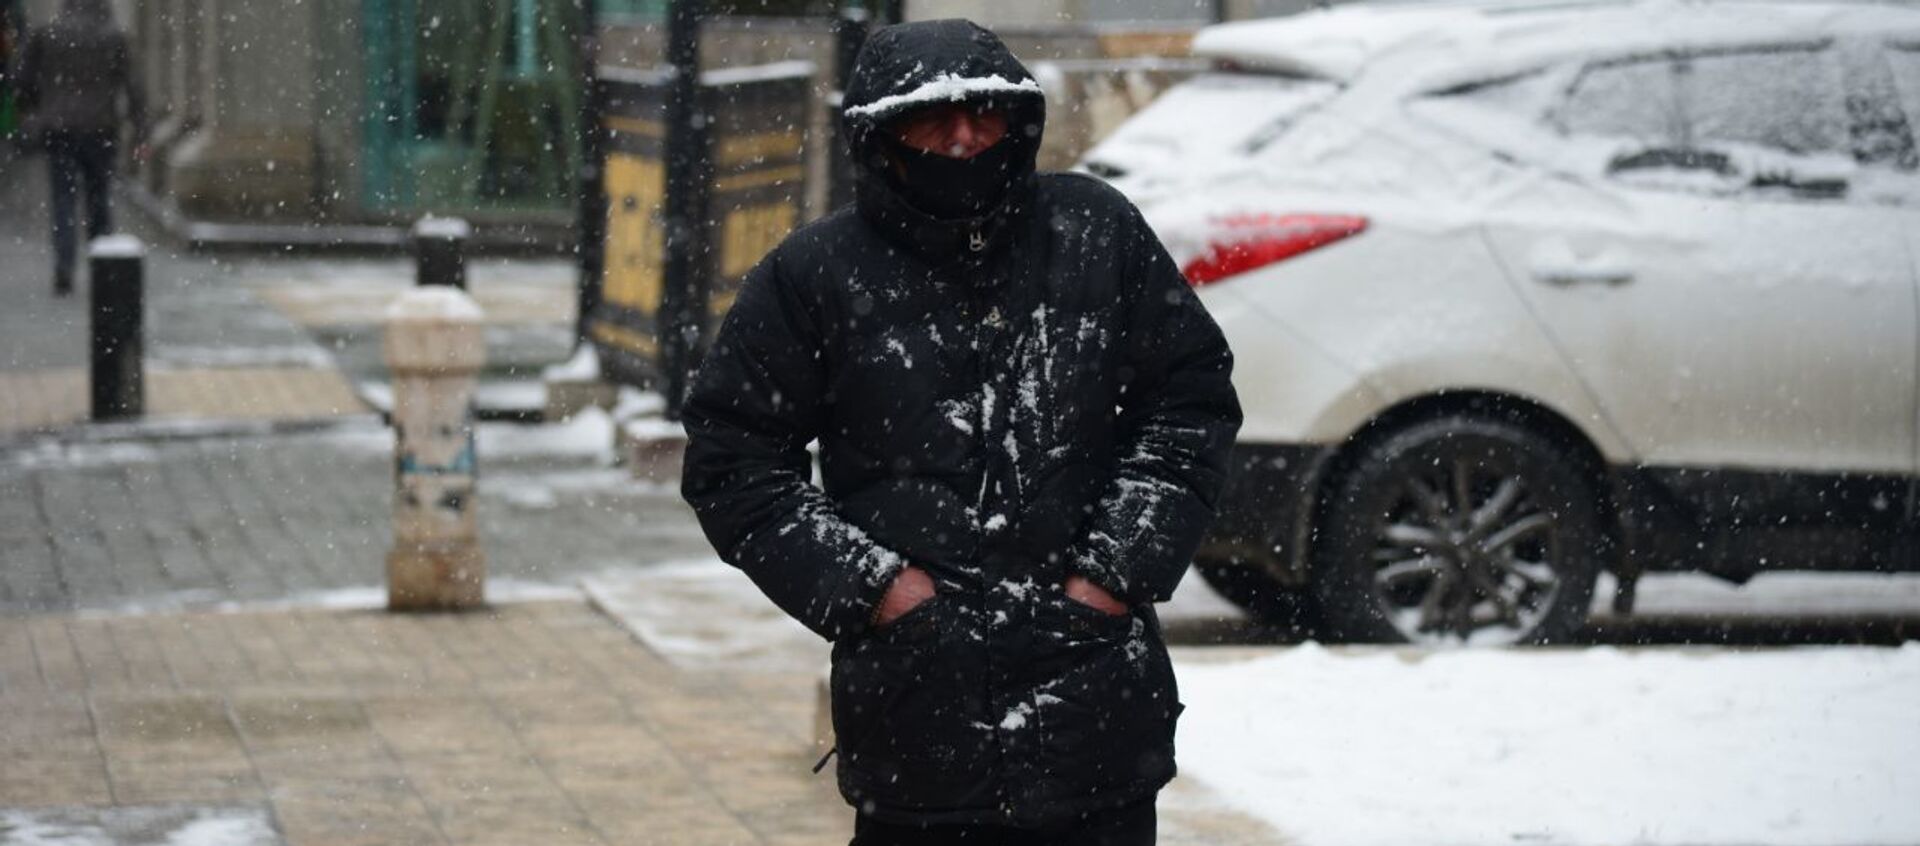 Эпидемия коронавируса - прохожий на улице в маске в снег - Sputnik Грузия, 1920, 24.02.2021